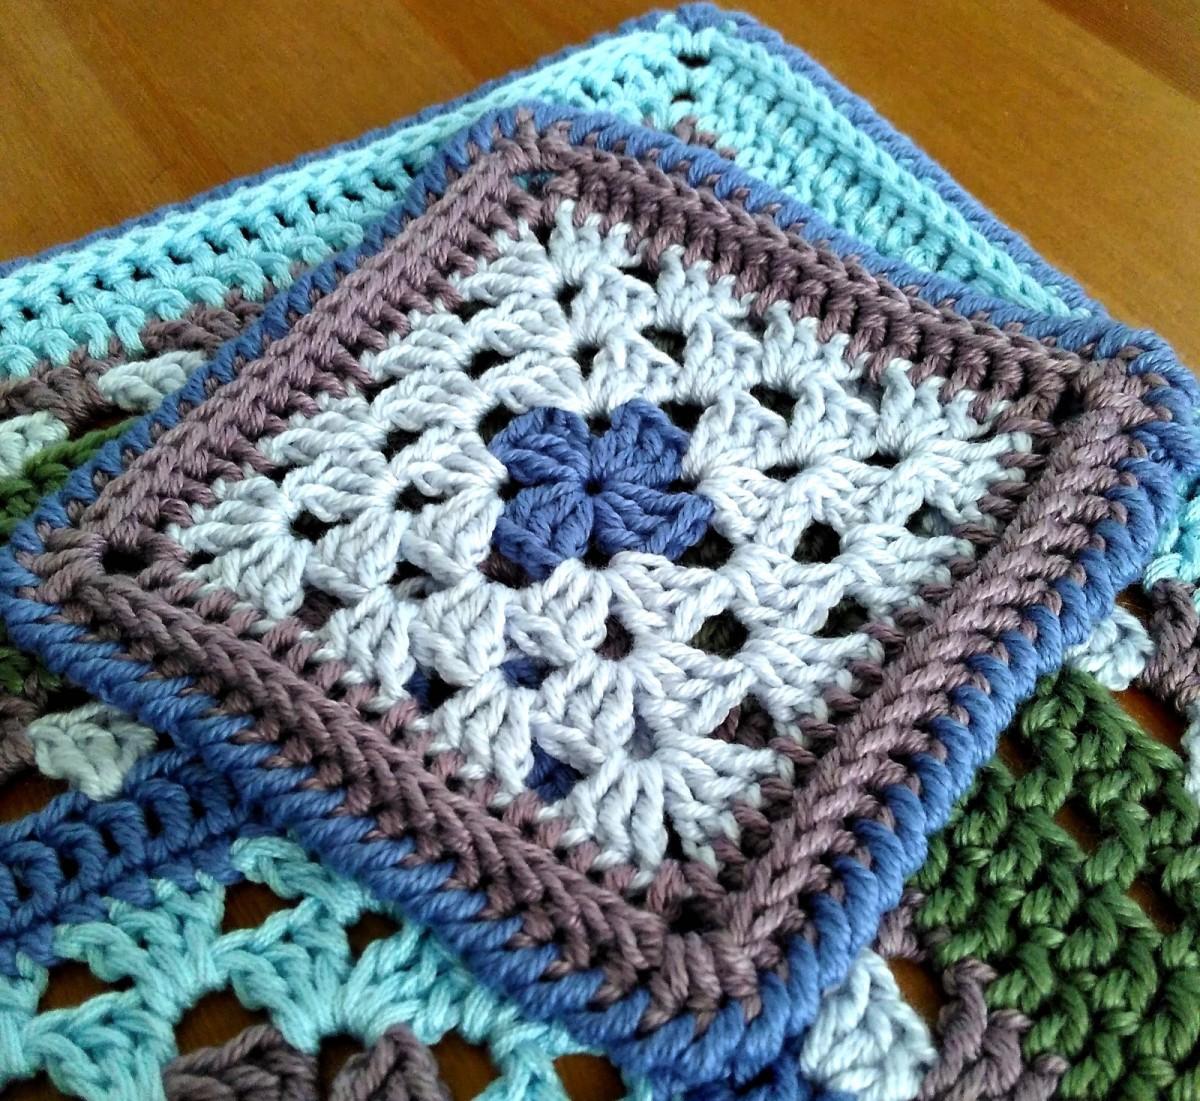 Granny square crochet coaster.